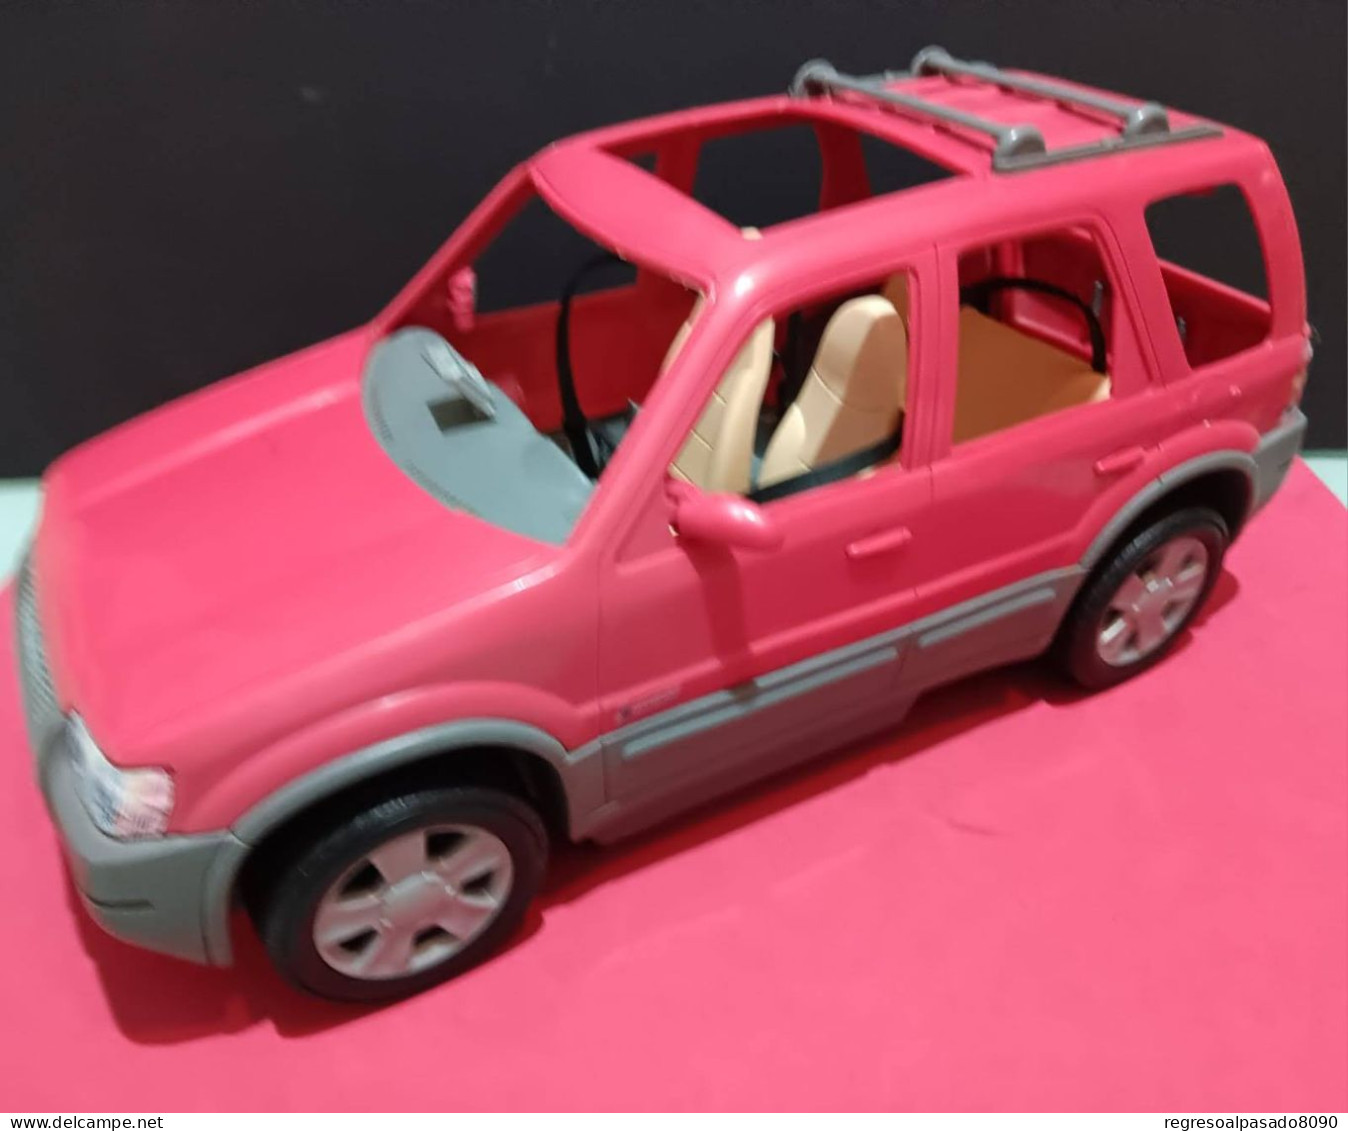 Antiguo Coche De Muñeca Barbie. Todoterreno Ford. Año 2002. Mattel - Barbie